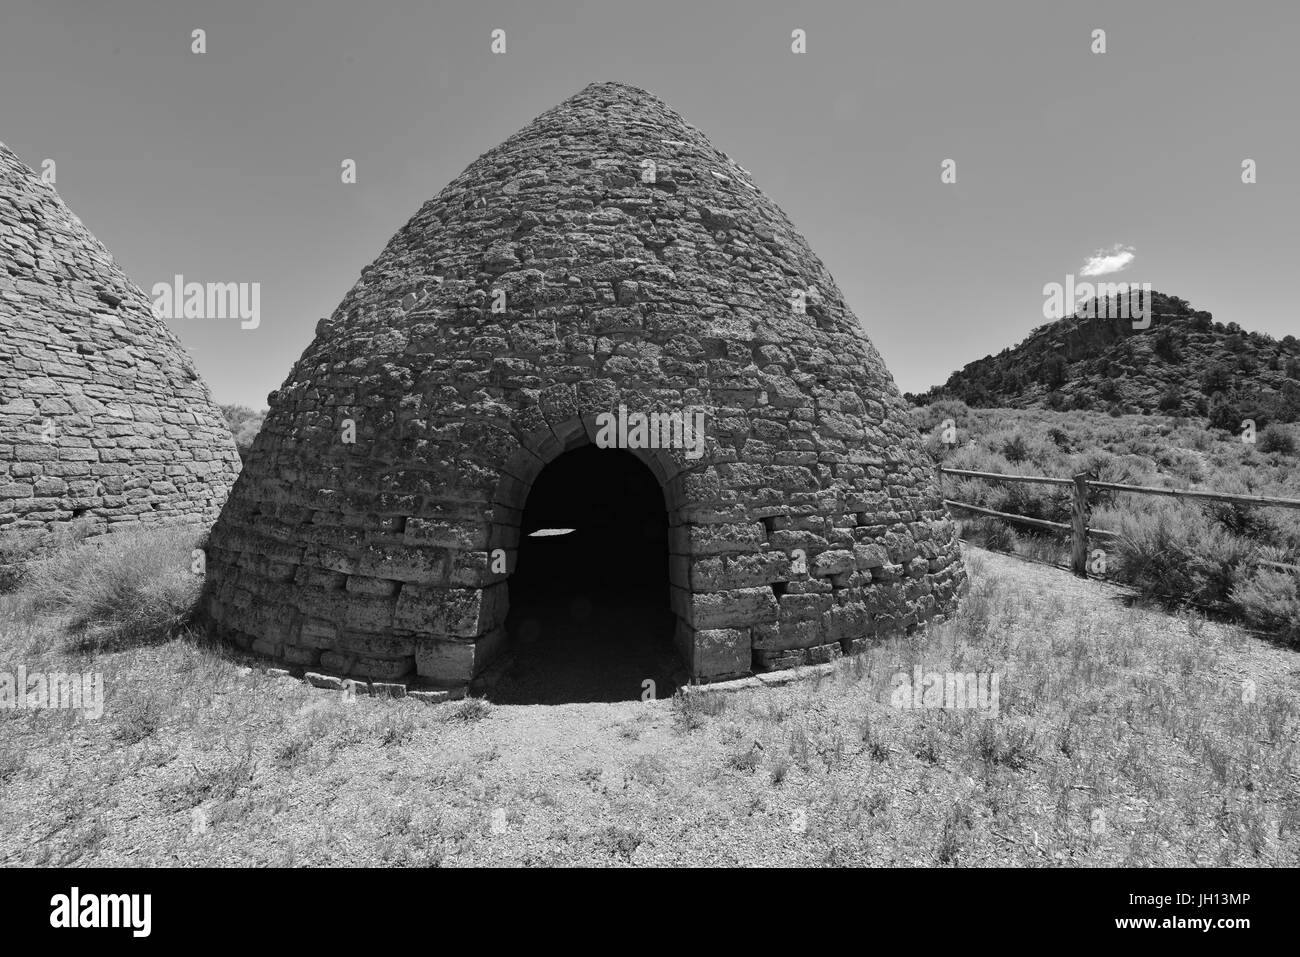 Kohleöfen zur Erstellung von Holzkohle für die Verhüttung des Erzes in Nevada im frühen 20. Jahrhundert verwendet. Stockfoto